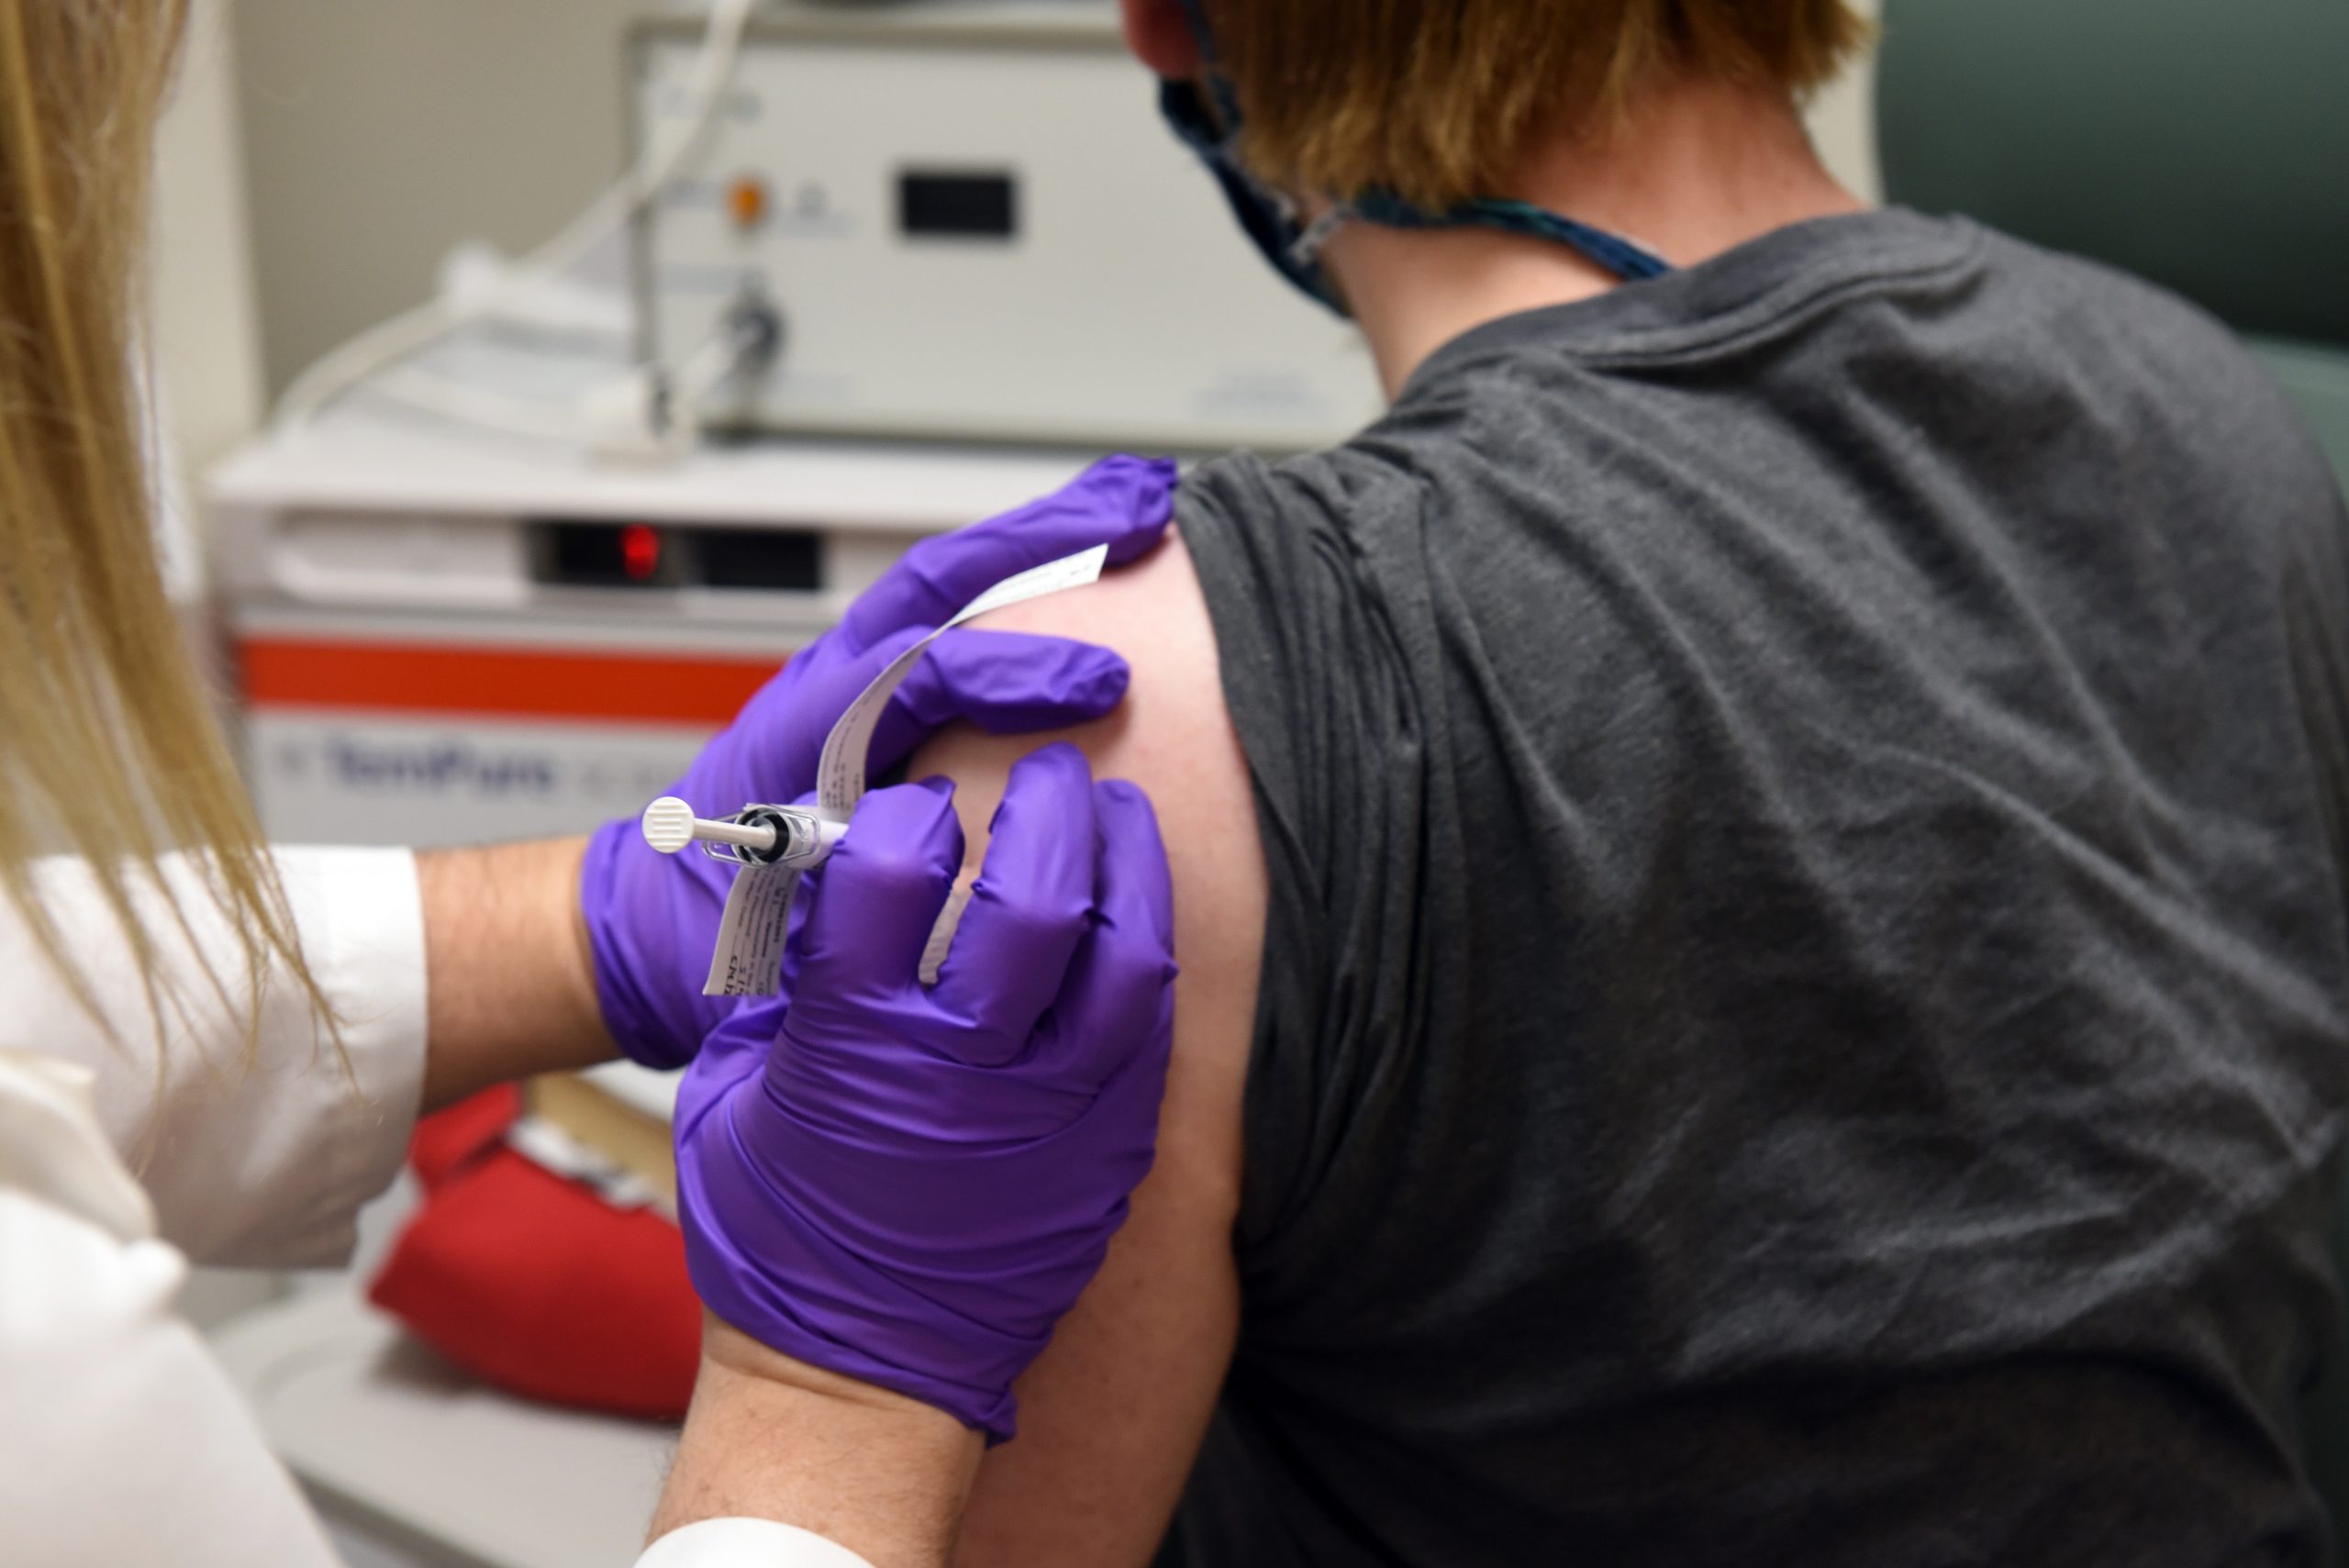 Estados Unidos le da vía rápida a Farmacéutica para aprobación y uso de dos vacunas contra covid-19 si demuestran eficacia